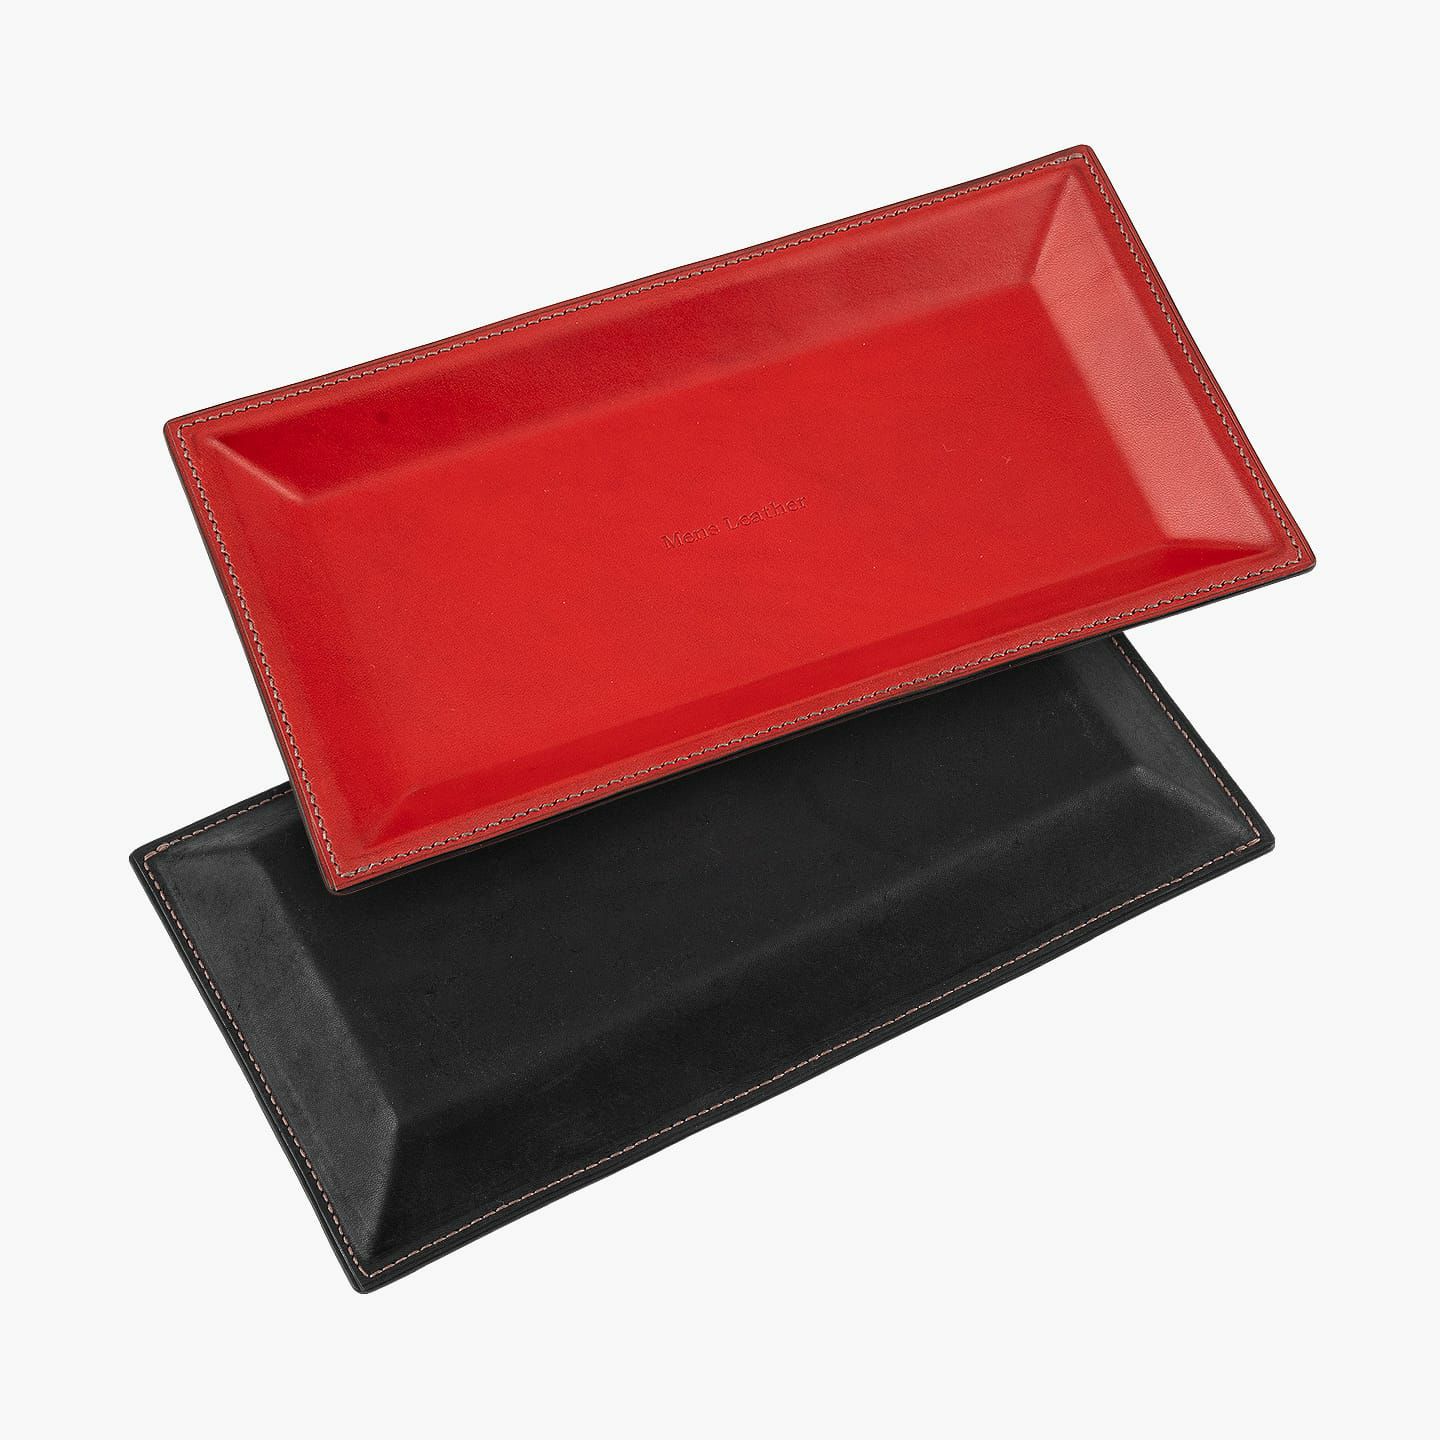 表面（イングラサット）：Red、裏面（マルゴー）： Black、糸色：Chocolate、名入れ刻印：素押し、名入れ文字：Mens Leather